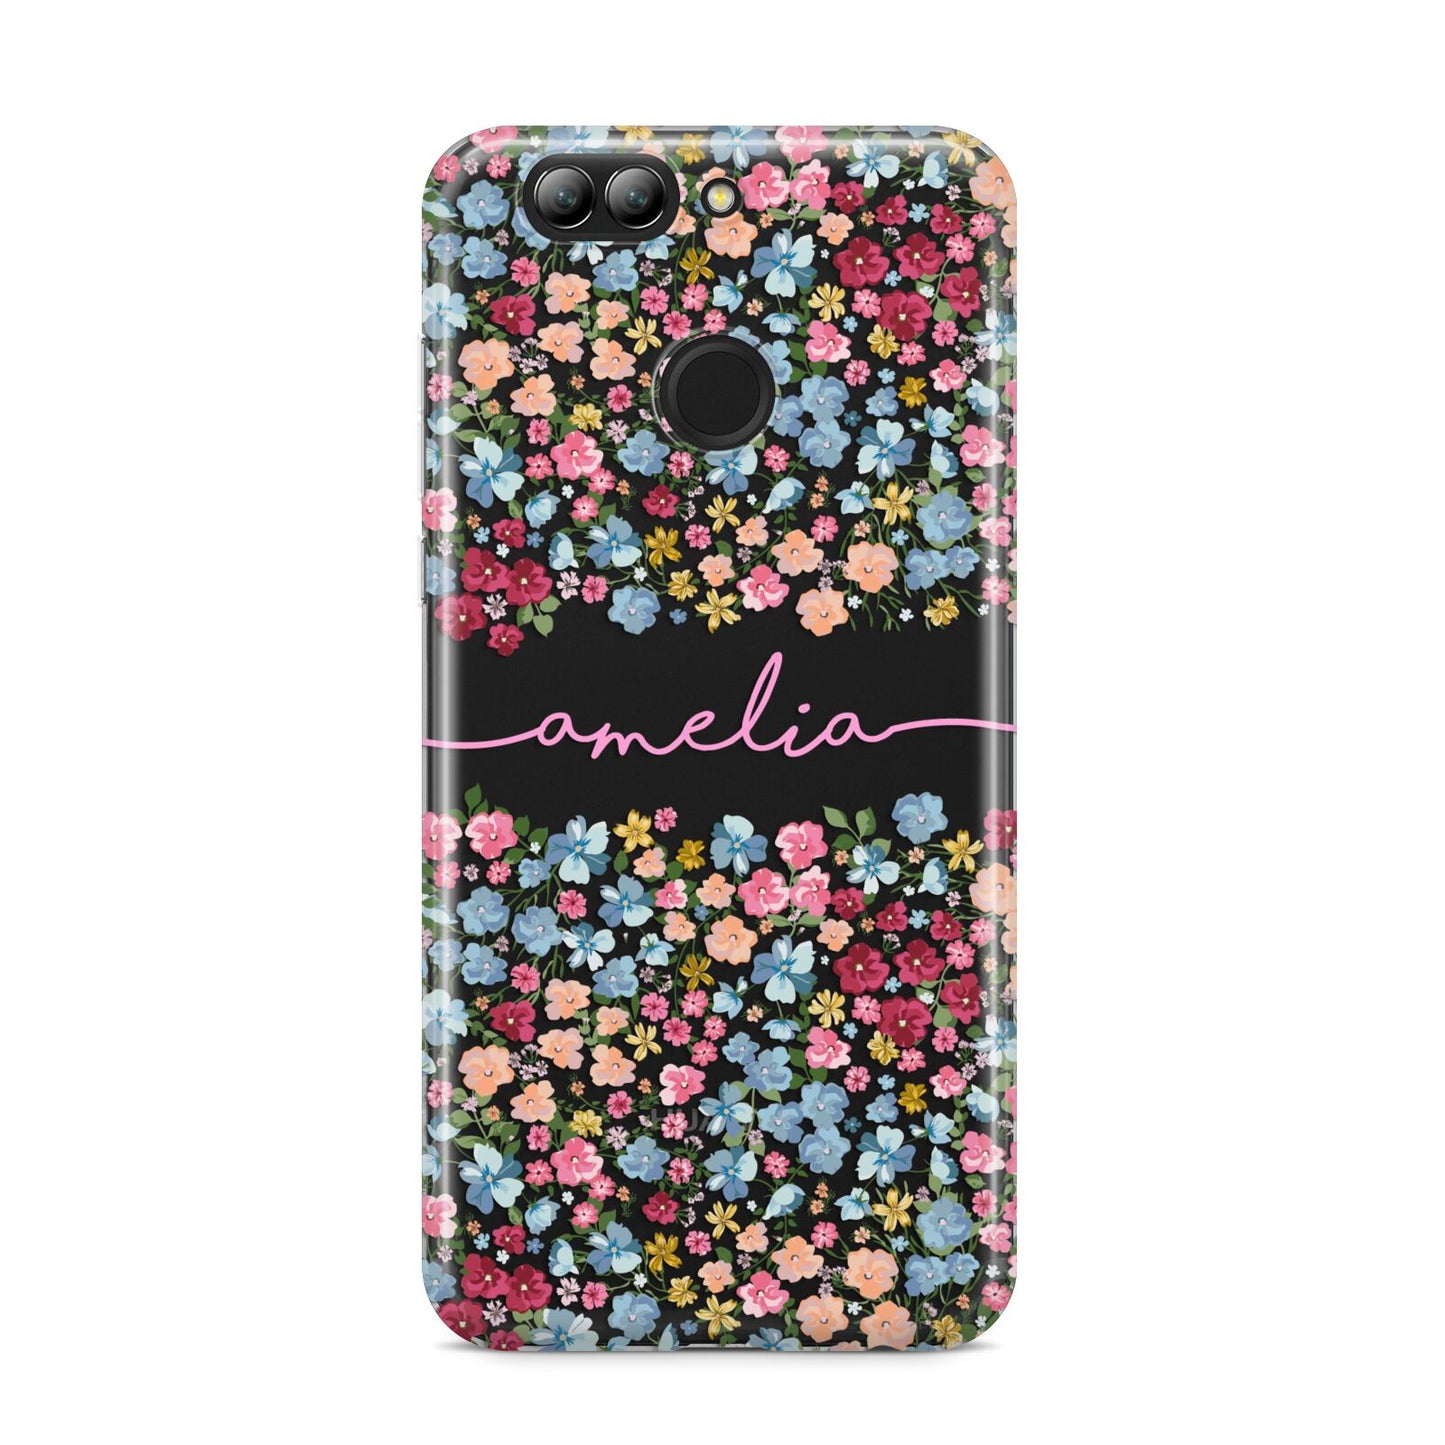 Personalised Floral Meadow Huawei Nova 2s Phone Case